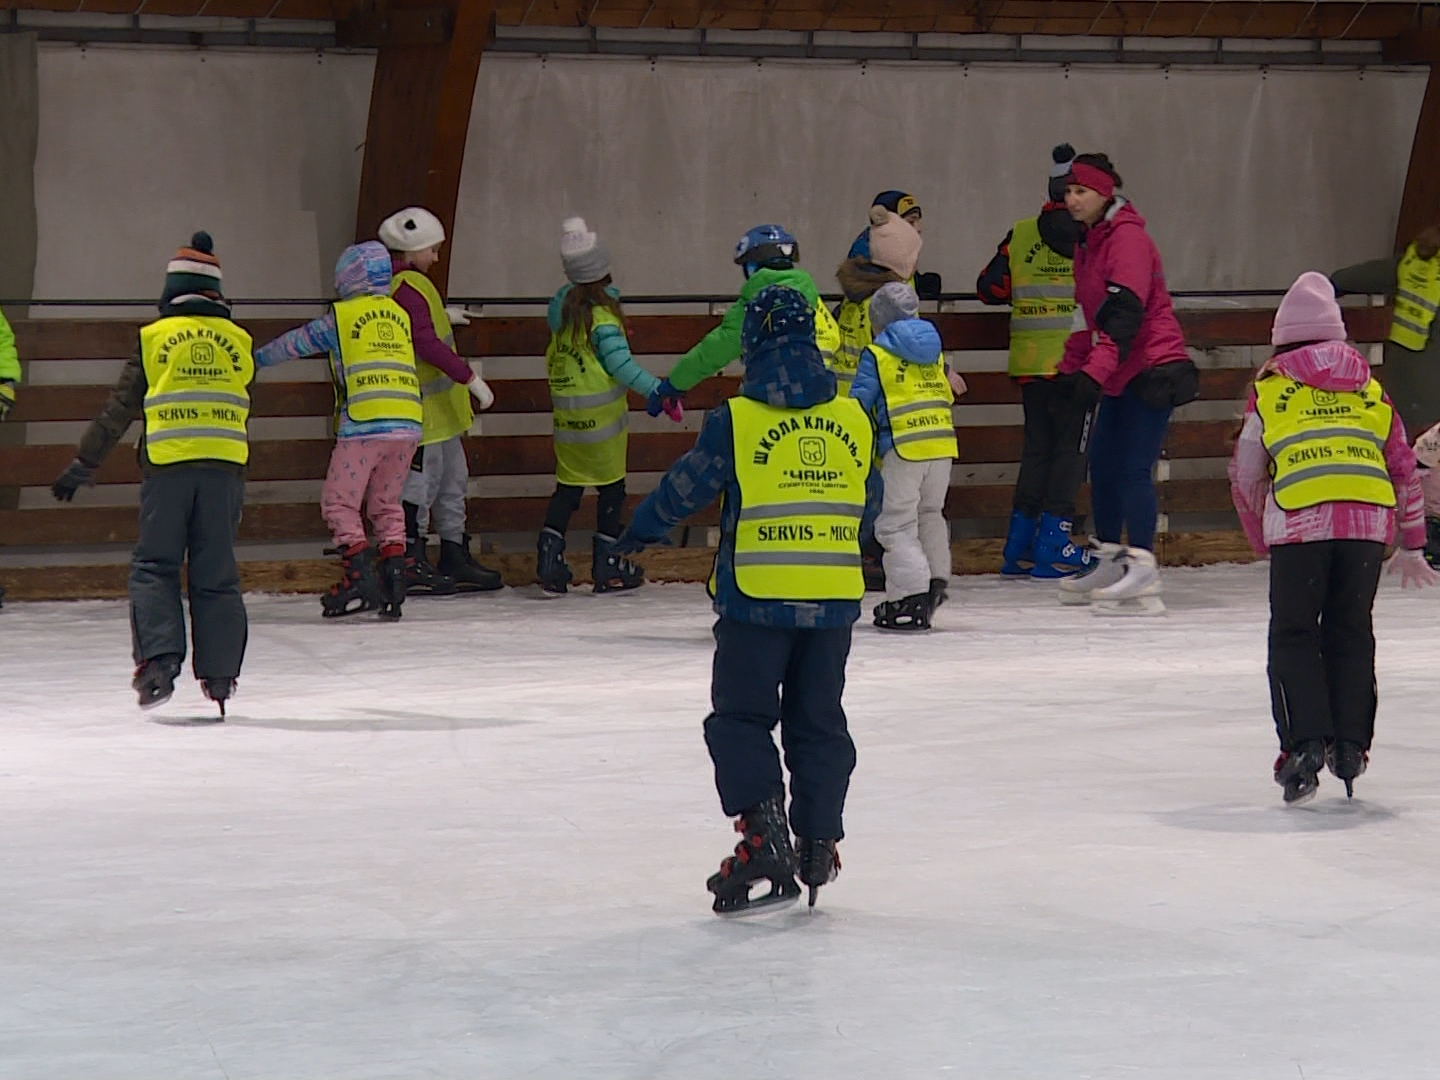 Mališani uživaju na ledu